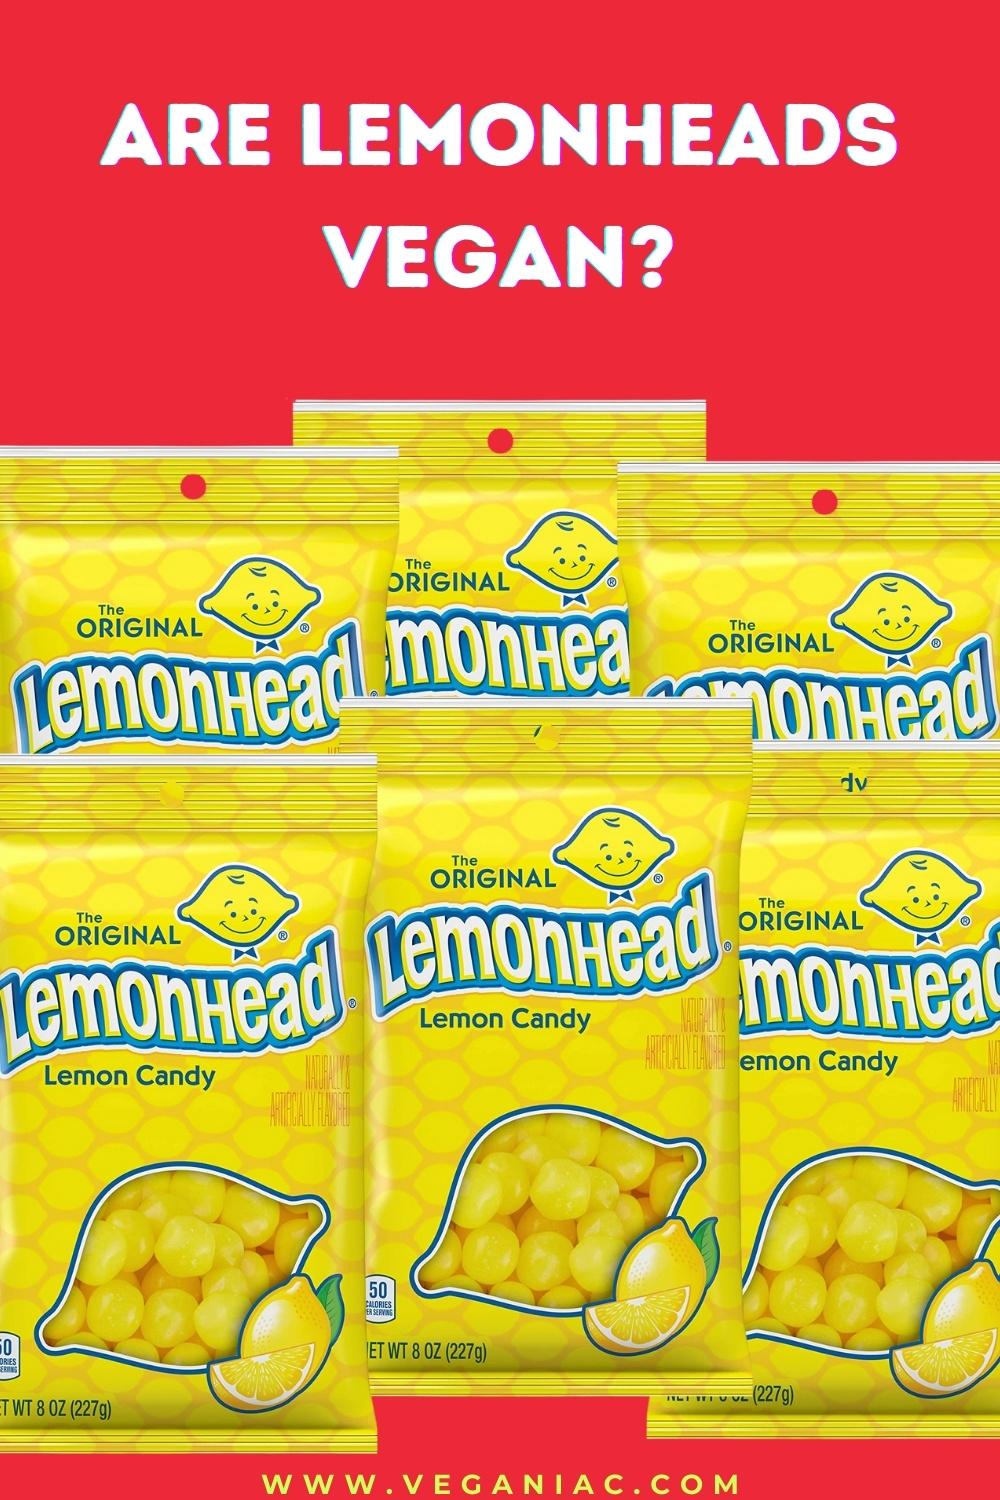 Are lemonheads vegan